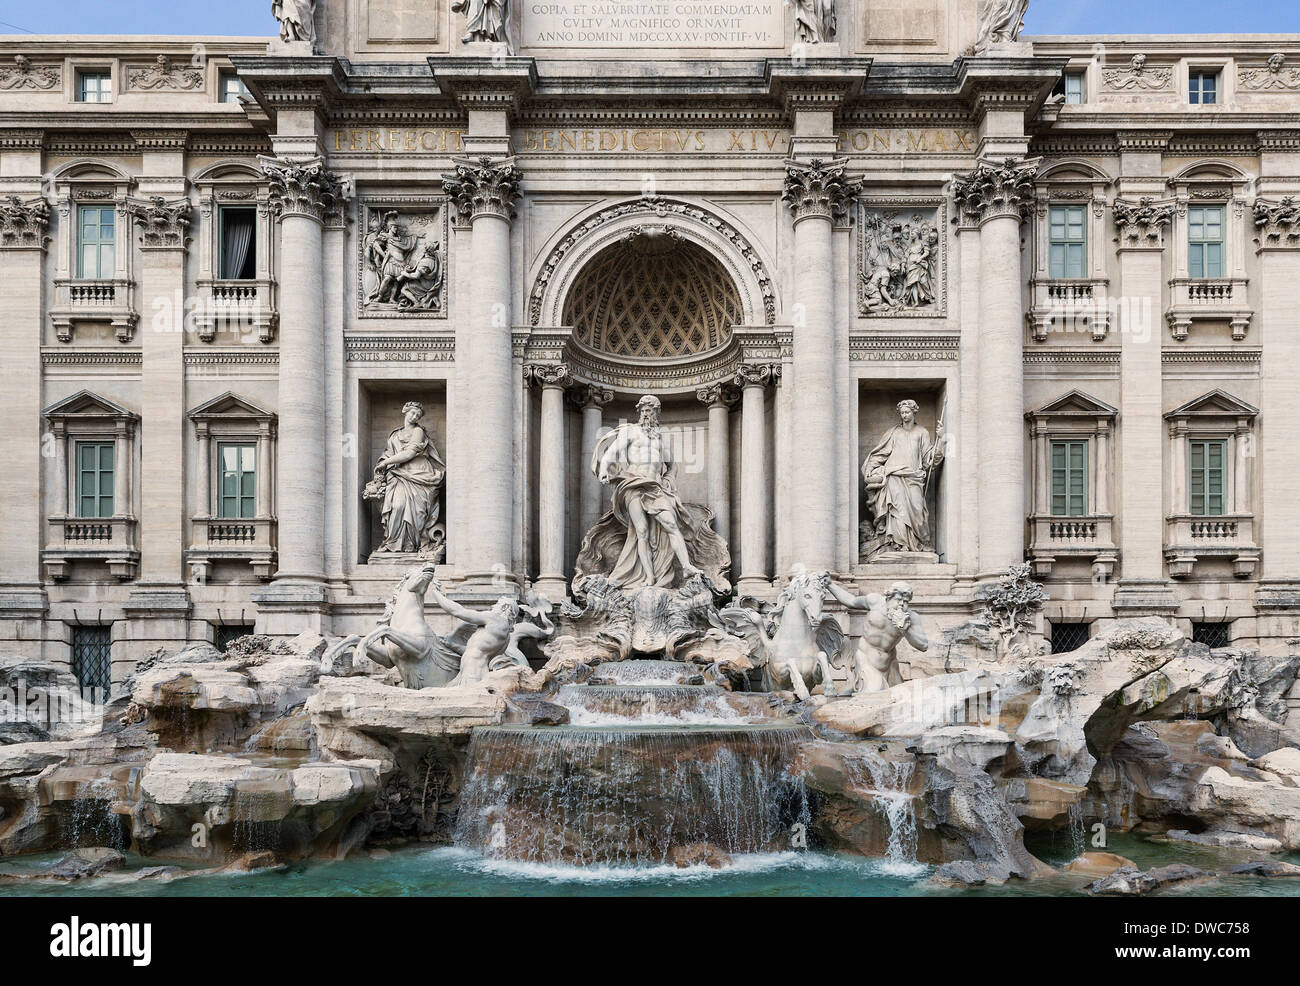 Les touristes se rassemblent pour admirer la Fontaine de Trevi, Rome, Italie Banque D'Images